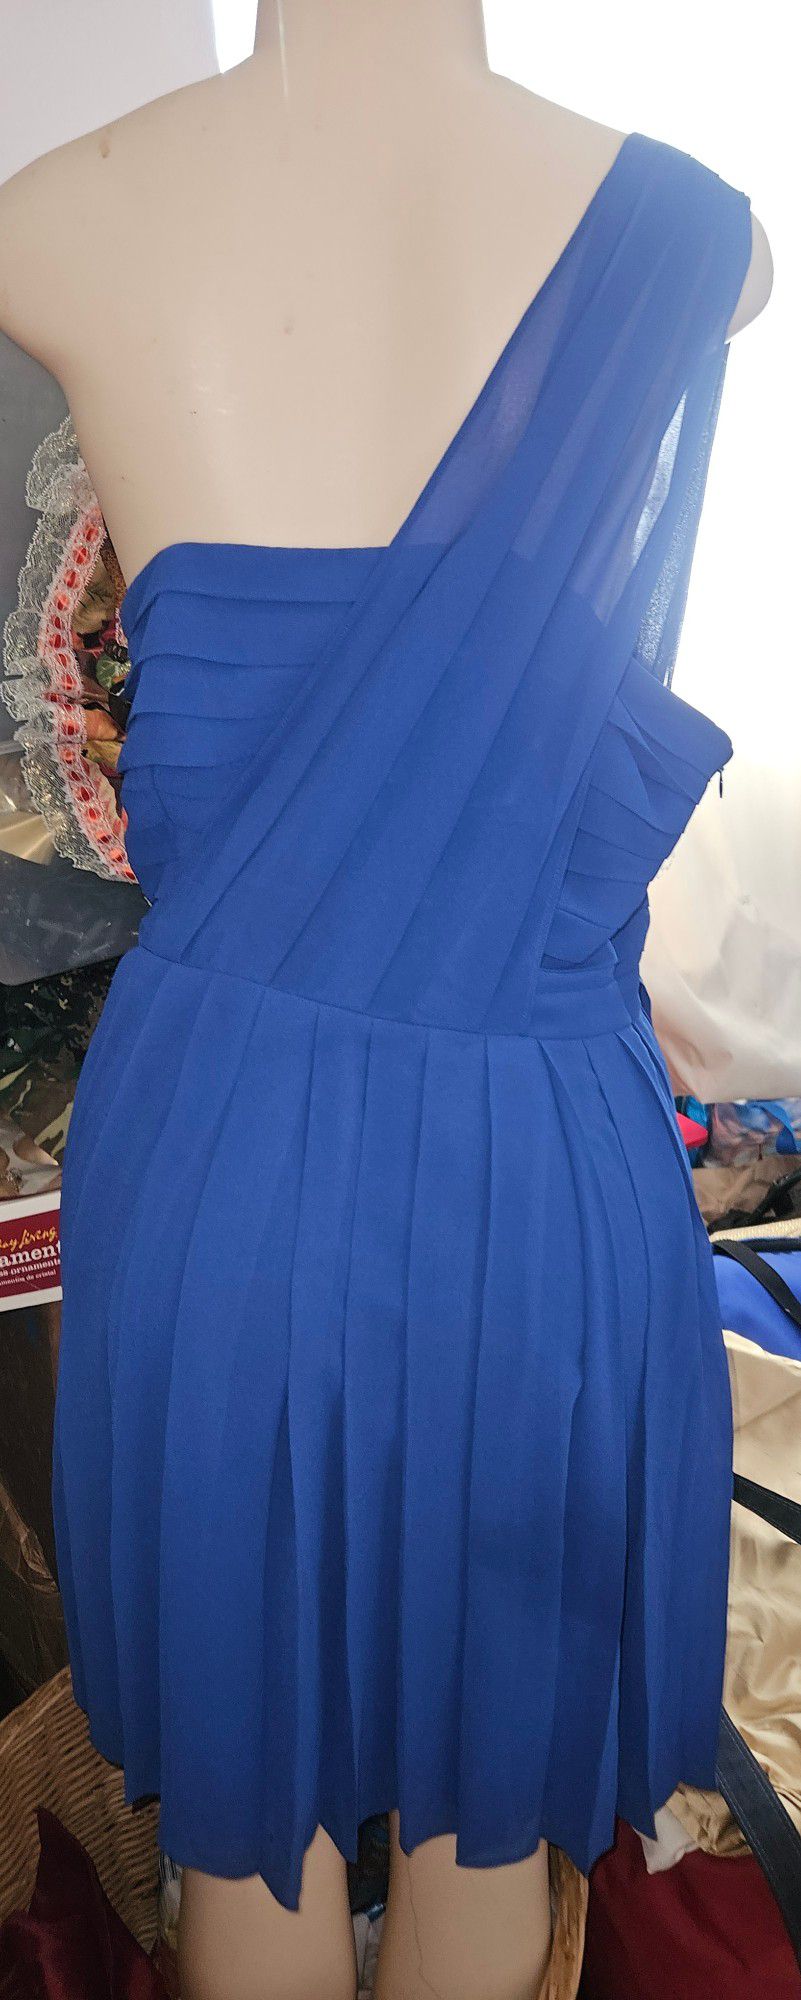 Pacific Blue One Shoulder Dress Size M

